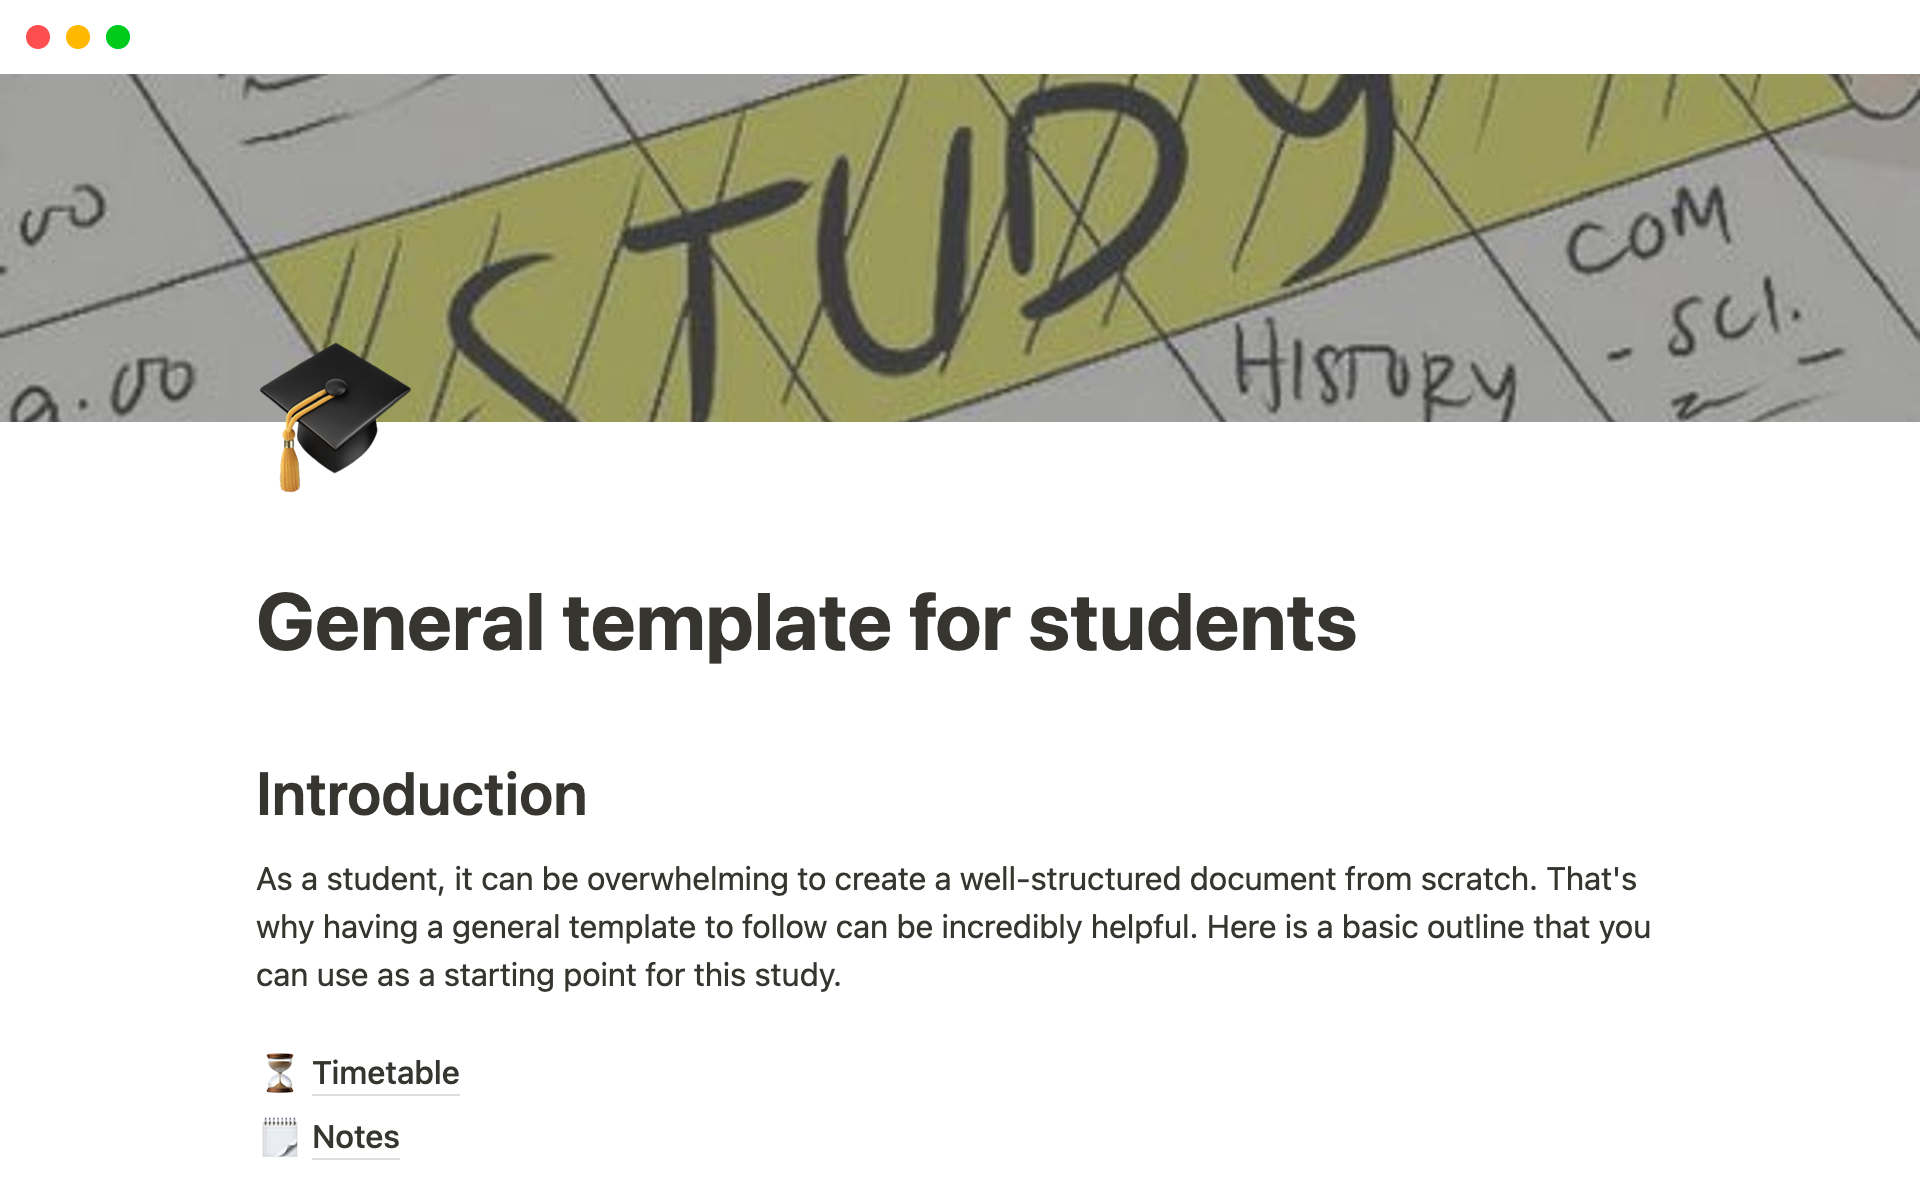 Aperçu du modèle de General template for students